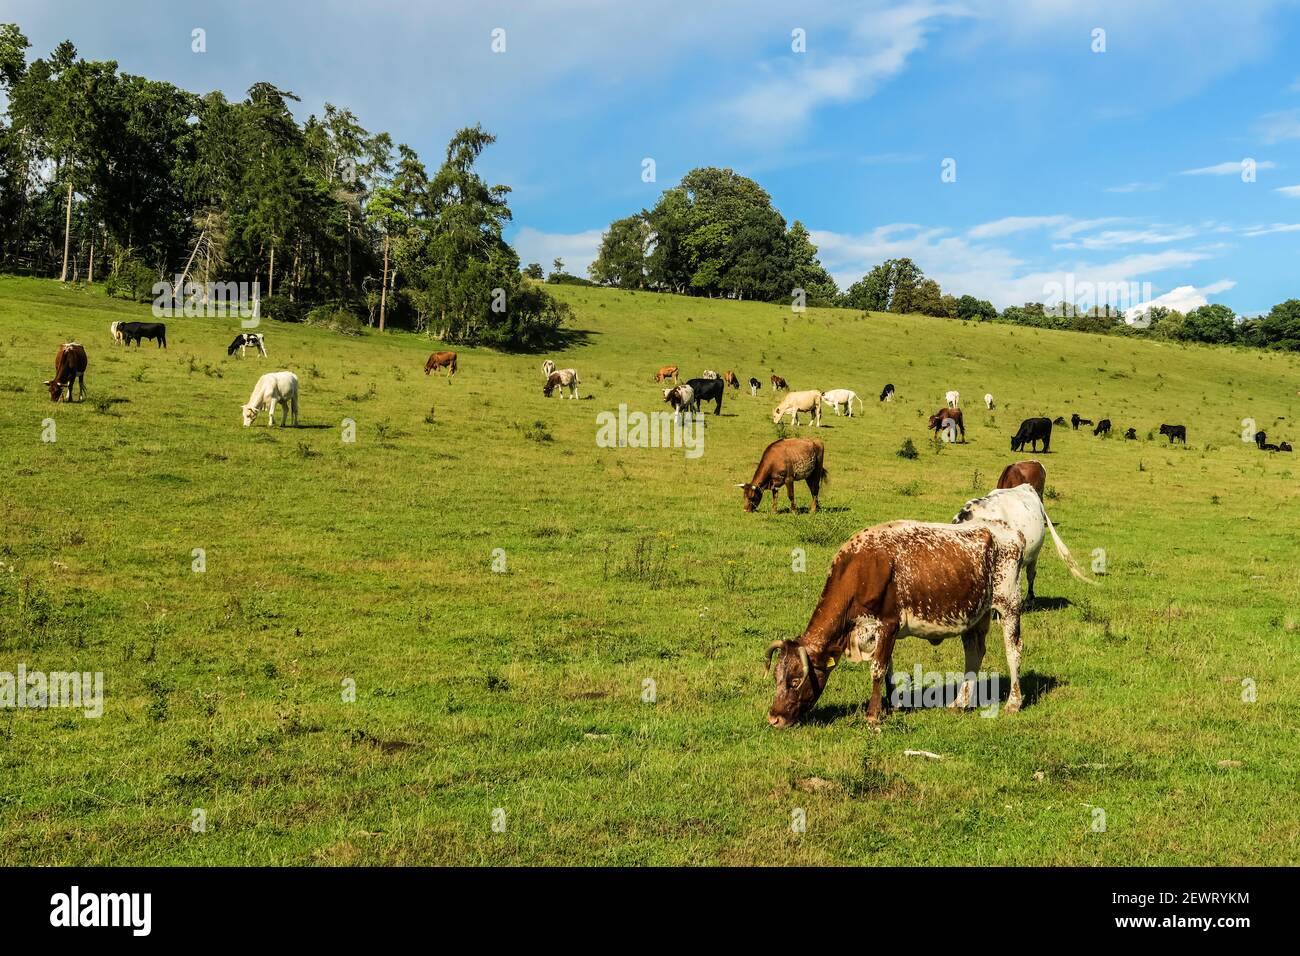 Viehweide in einem Chiltern Hills Tal bei Rotherfield Grays westlich von Henley-on-Thames, Rotherfield Grays, Oxfordshire, England, Vereinigtes Königreich Stockfoto